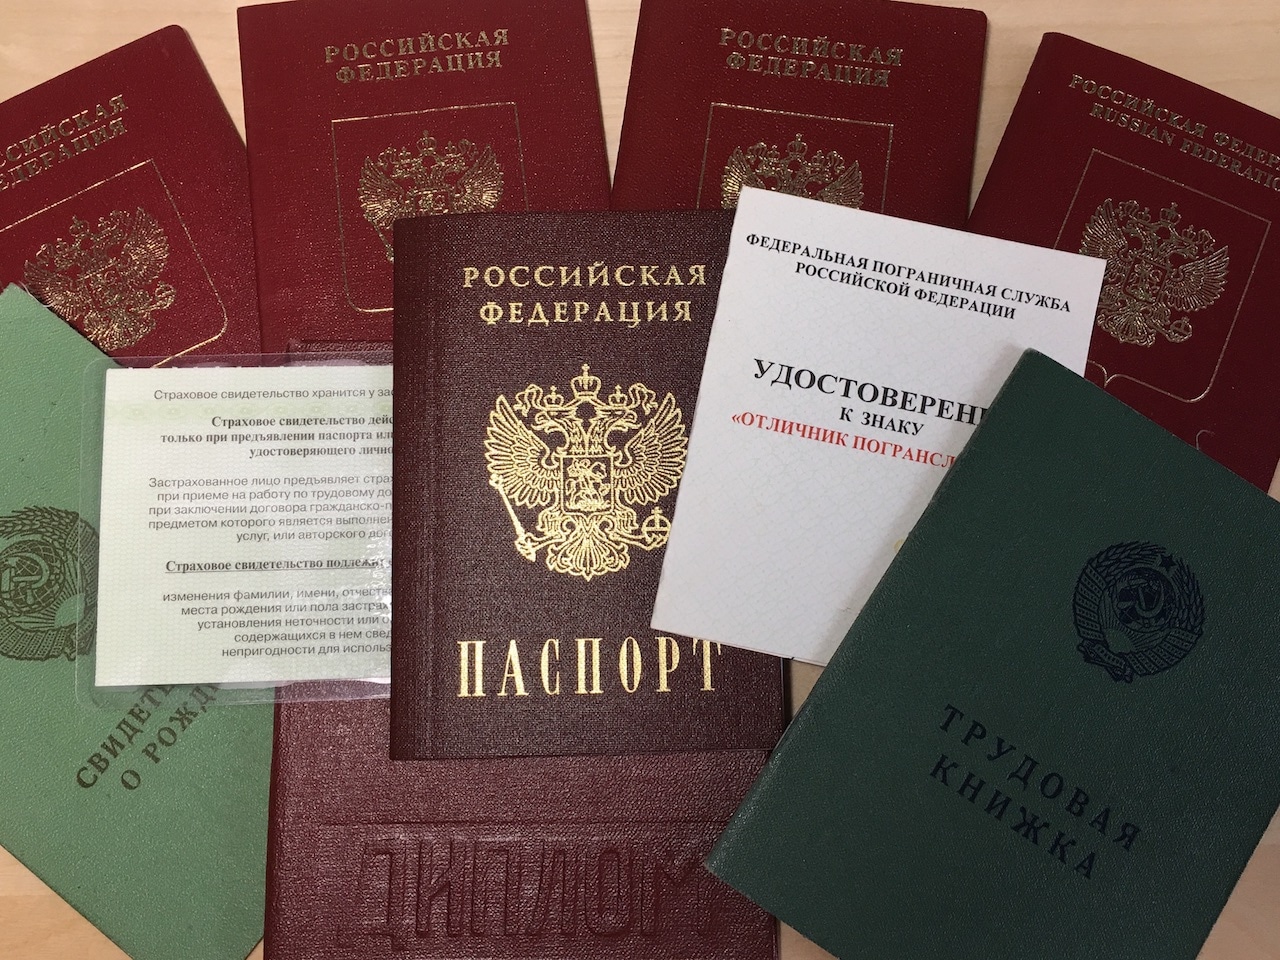 Со это какой документ. Документы гражданина РФ. Документ удостоверяющий личность и гражданство.